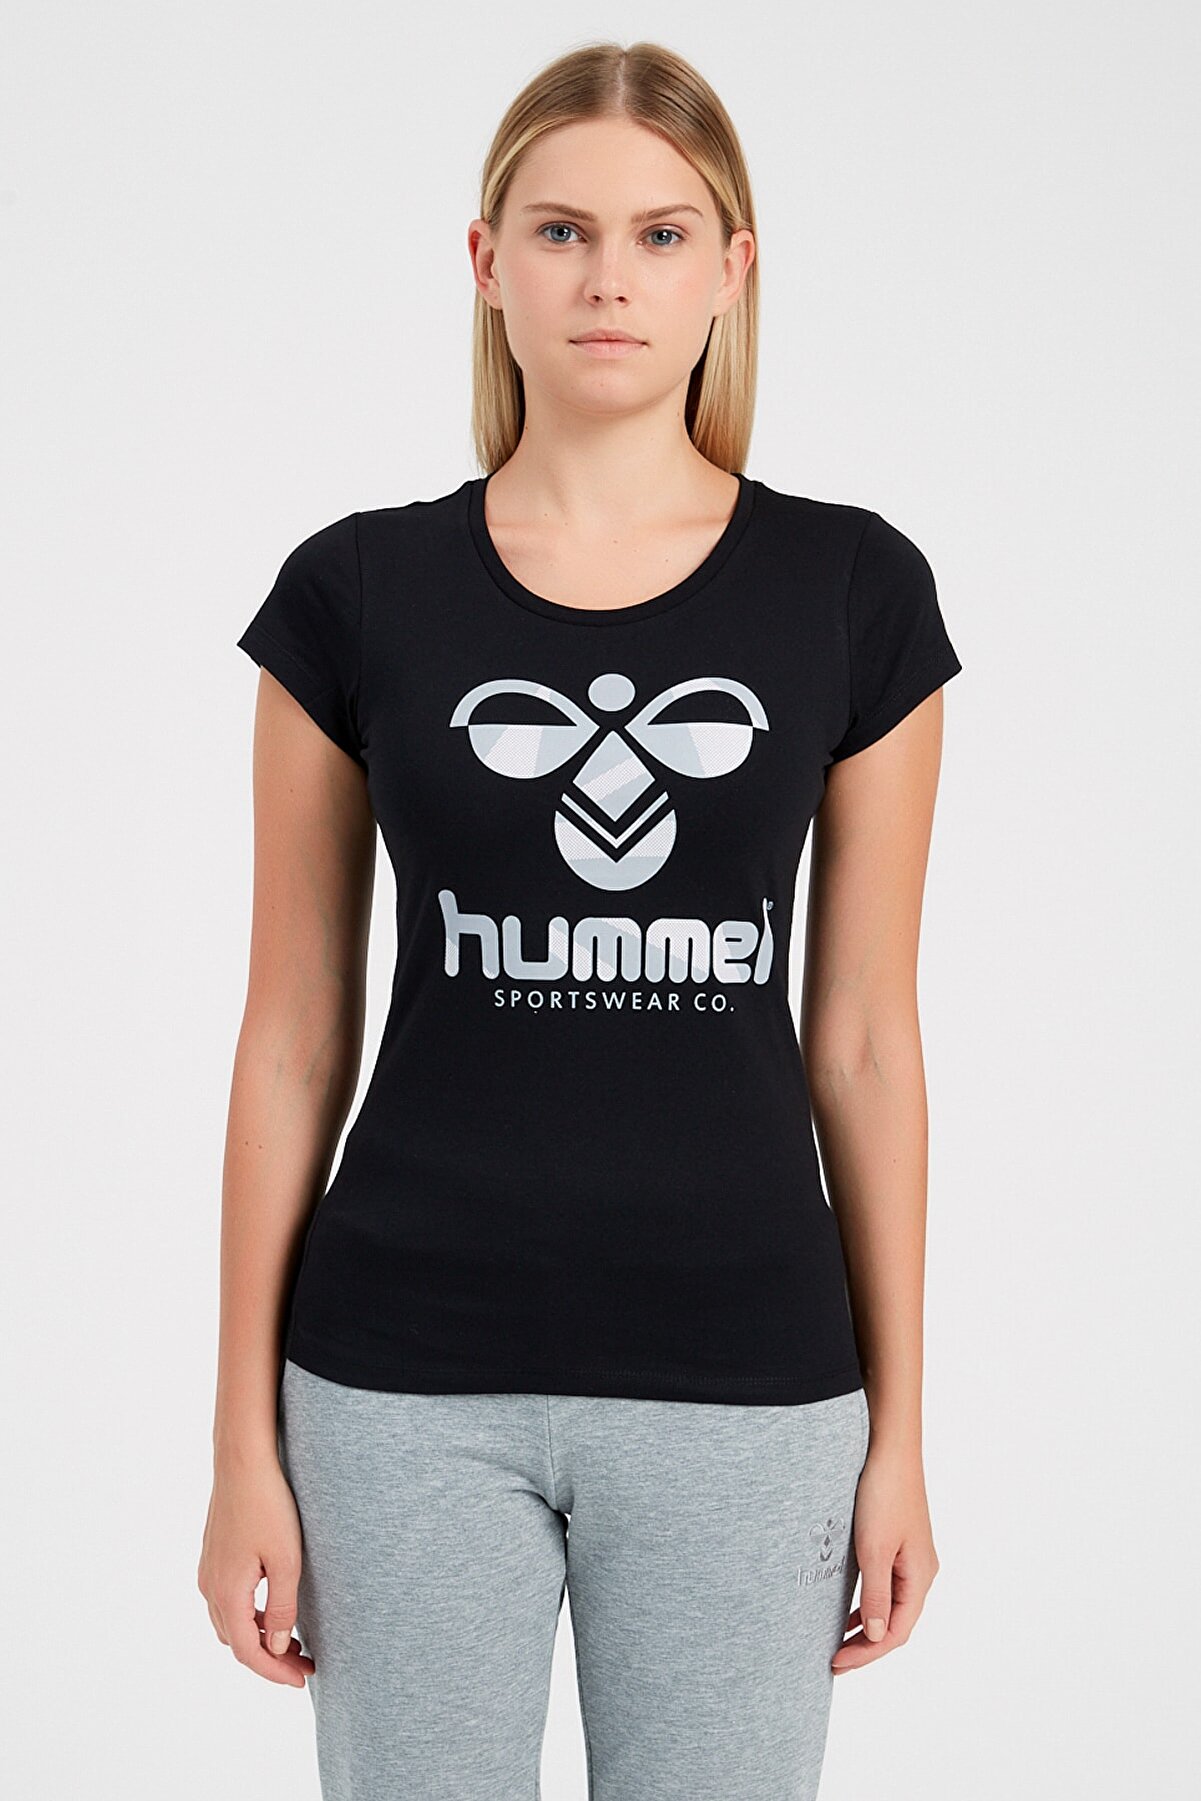 hummel Kadın Spor T-shirt - Hmlavalın T-Shırt S/